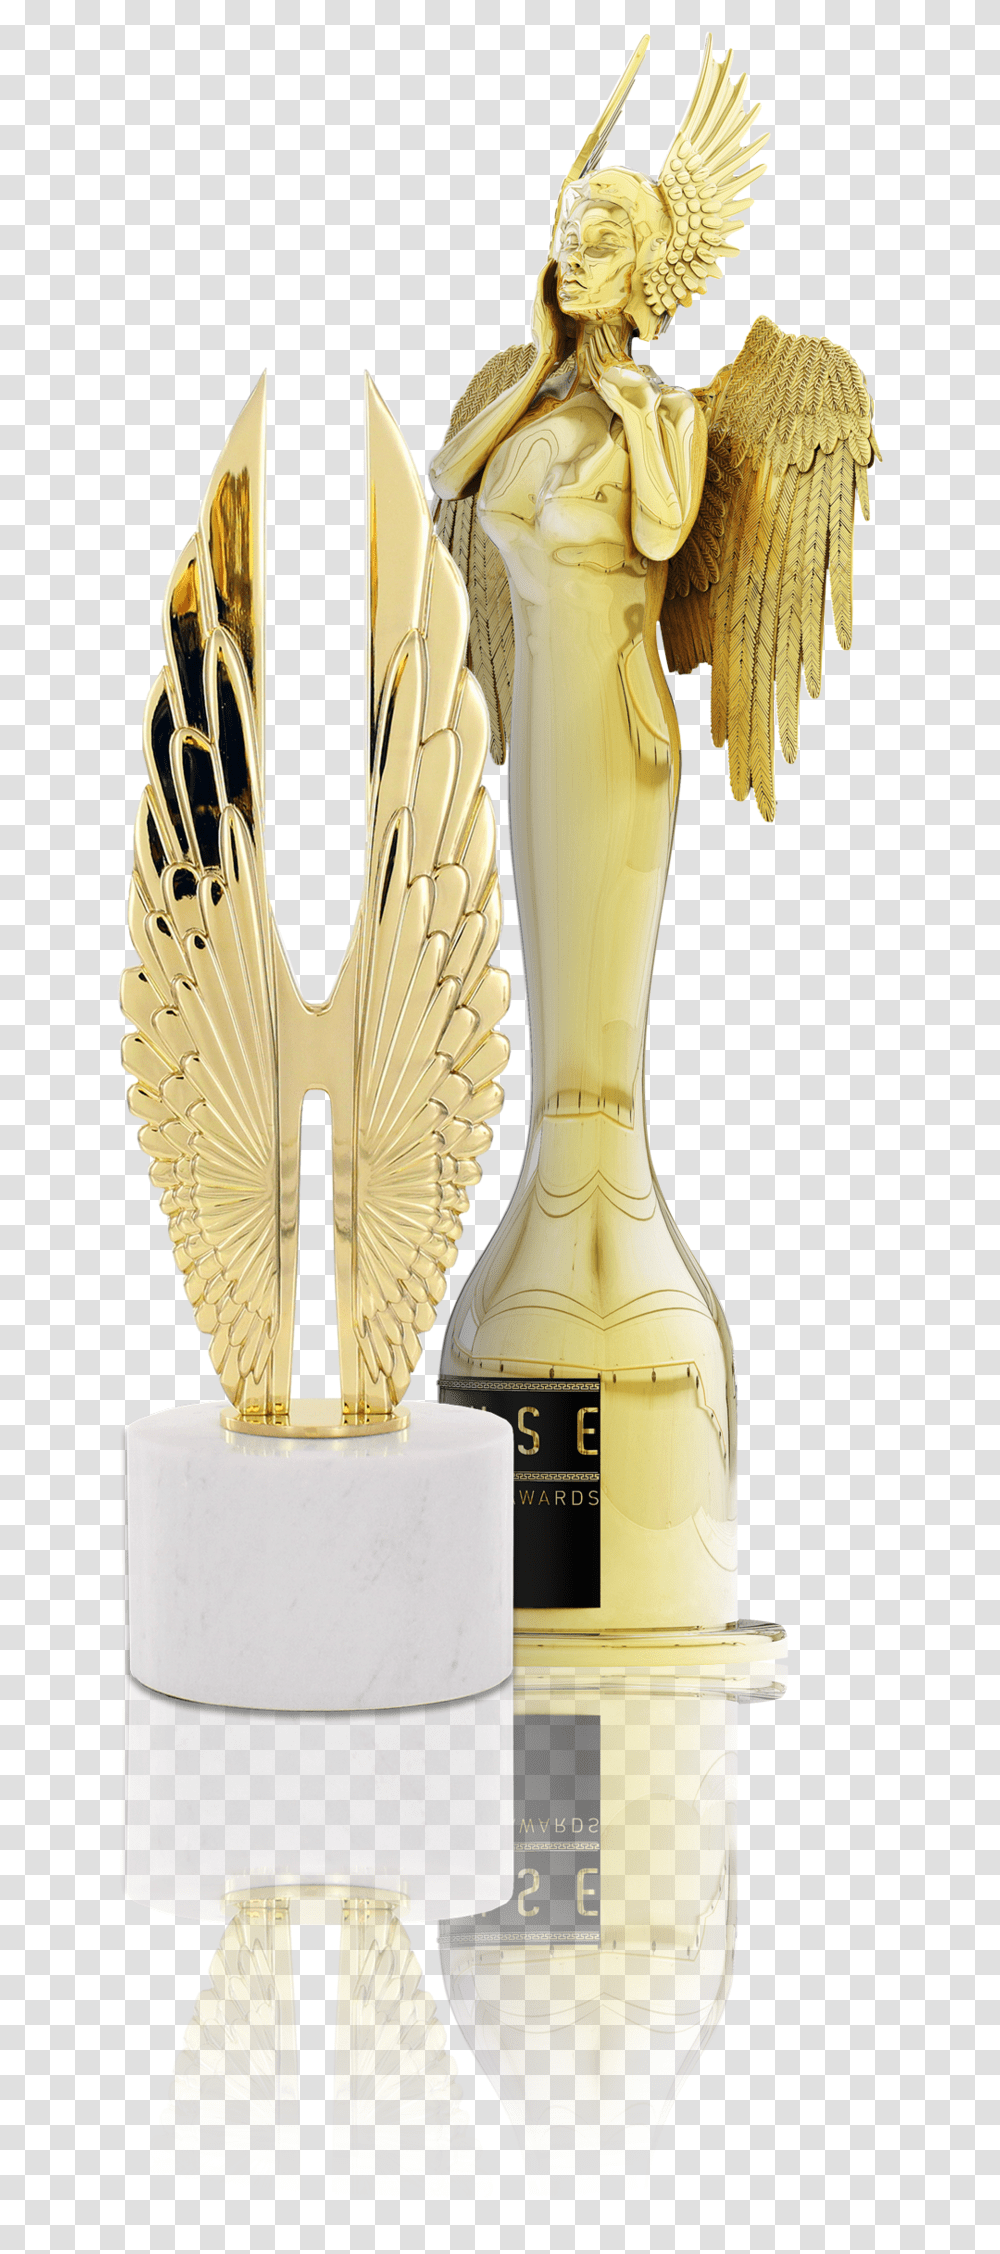 Muse Creative Awards Logo, Trophy, Ivory, Gold, Beverage Transparent Png